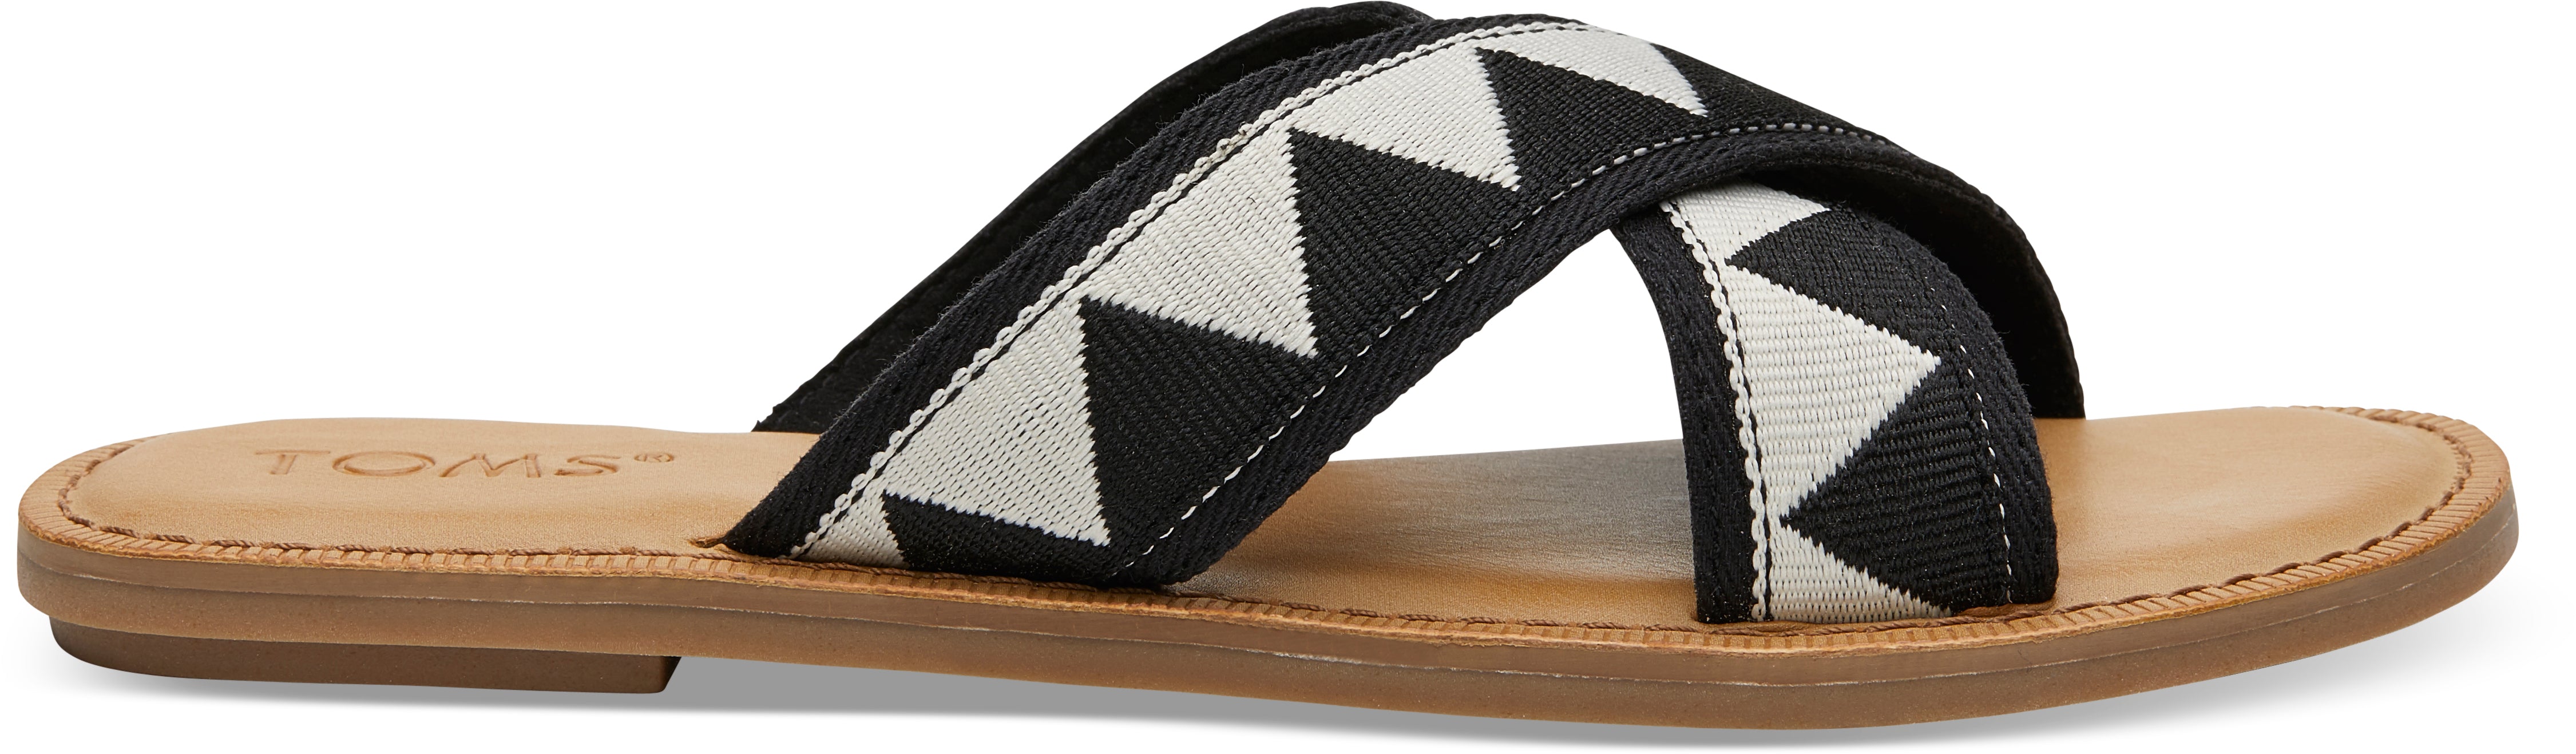 Dámské černobílé sandály TOMS Tribal Viv